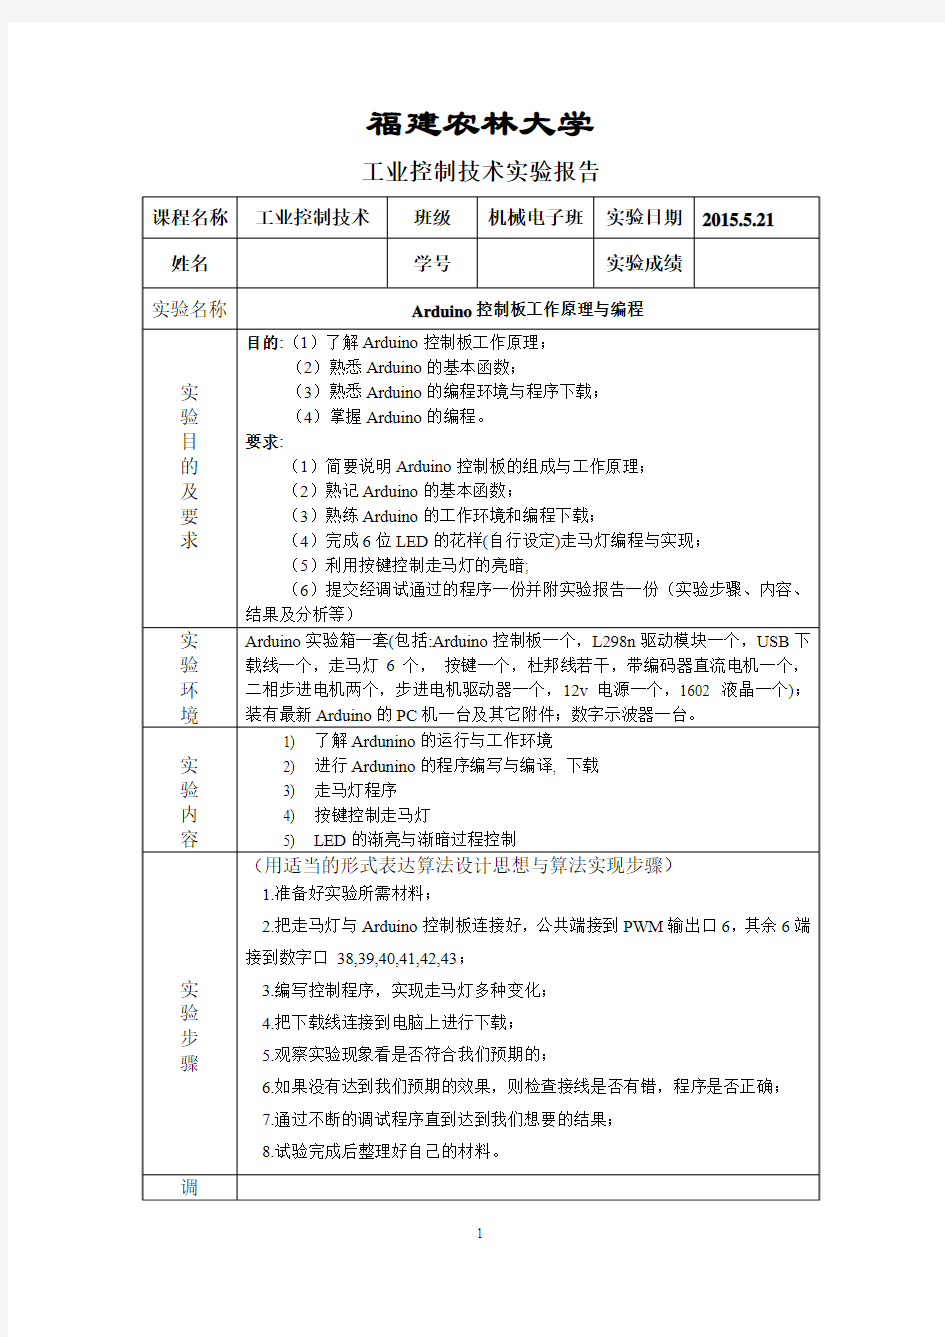 福建农林大学工业控制实验报告(完整版)